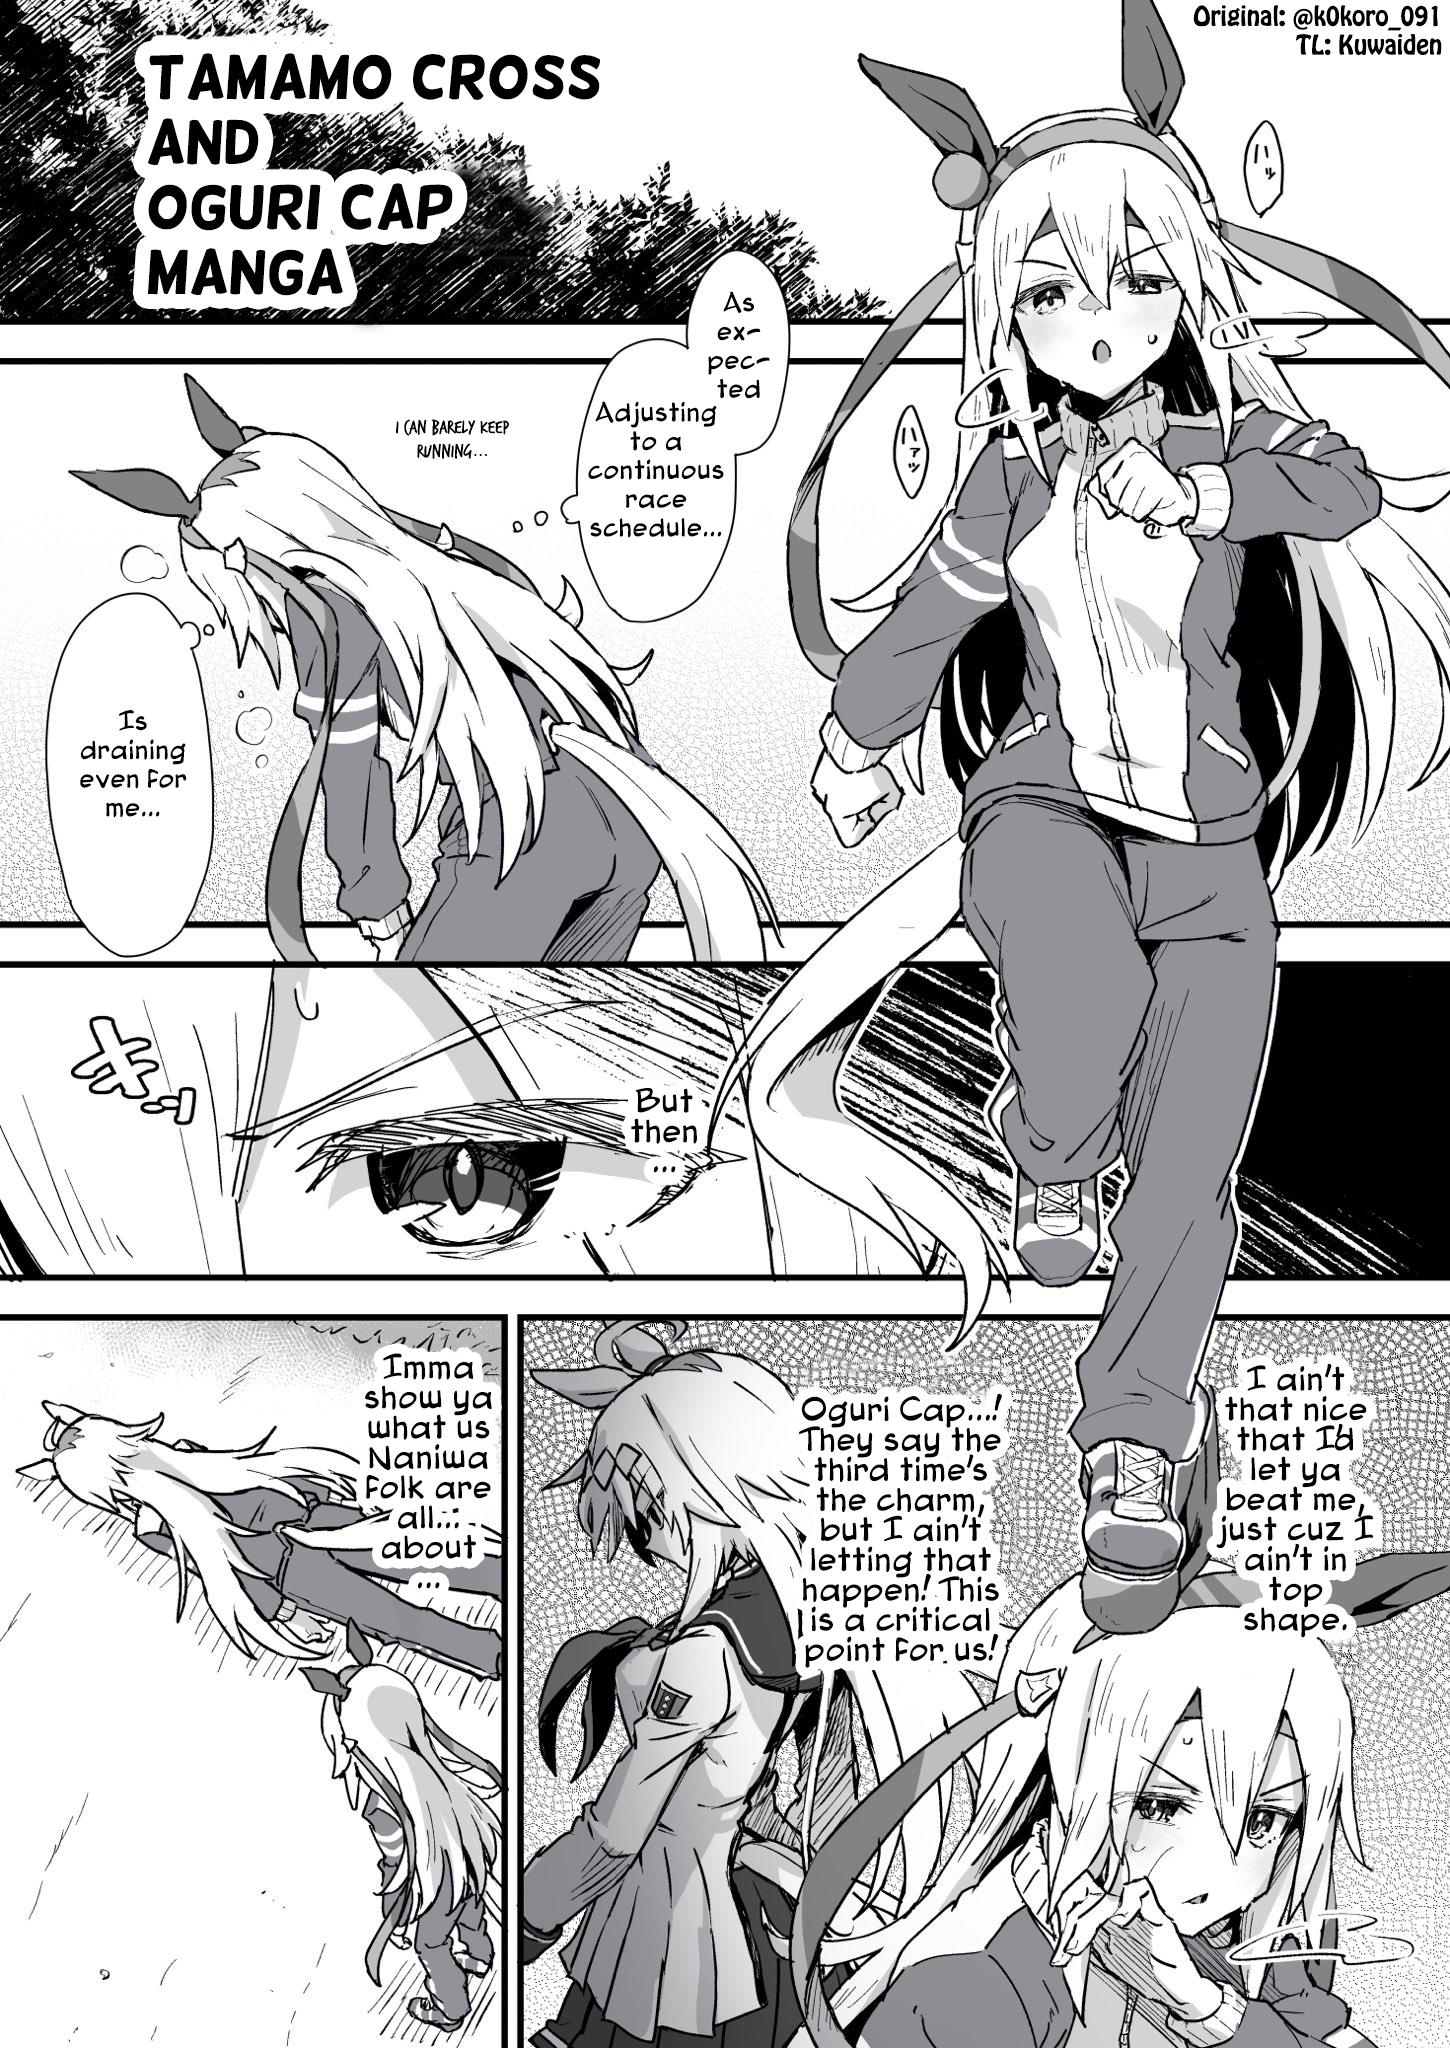 Kokoro-Sensei's Umamusume Shorts (Doujinshi) - Page 1